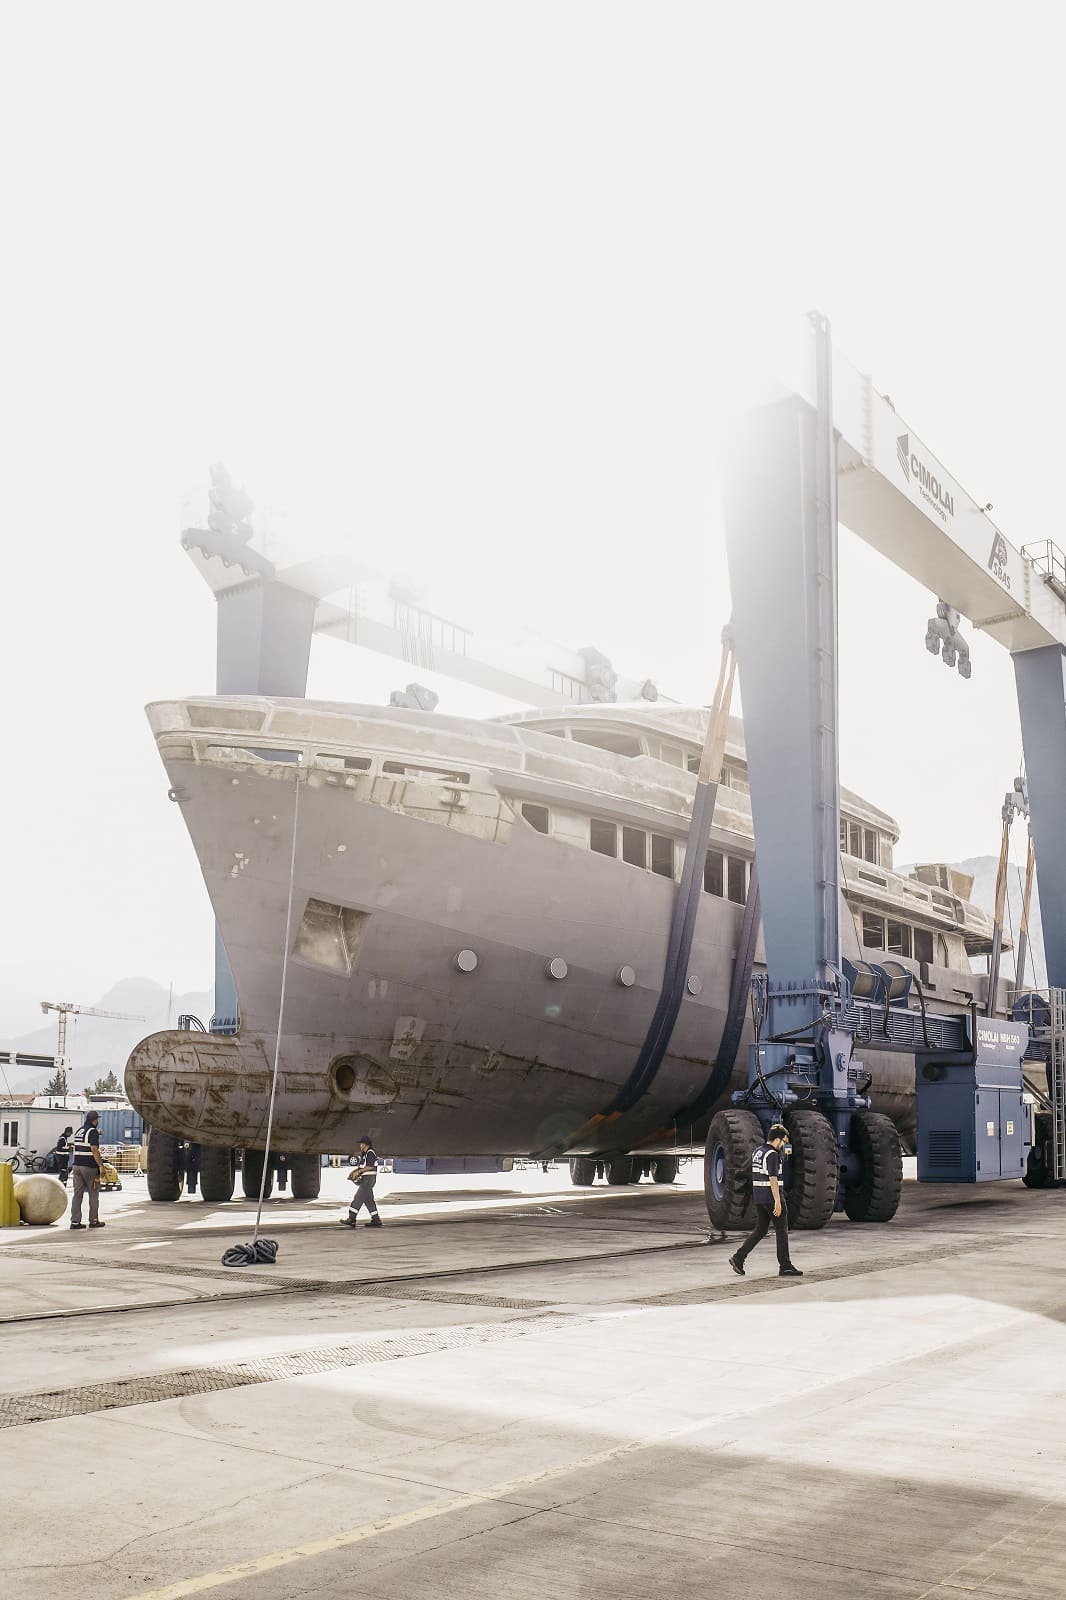 Bering 125: the hull arrived in Antalya